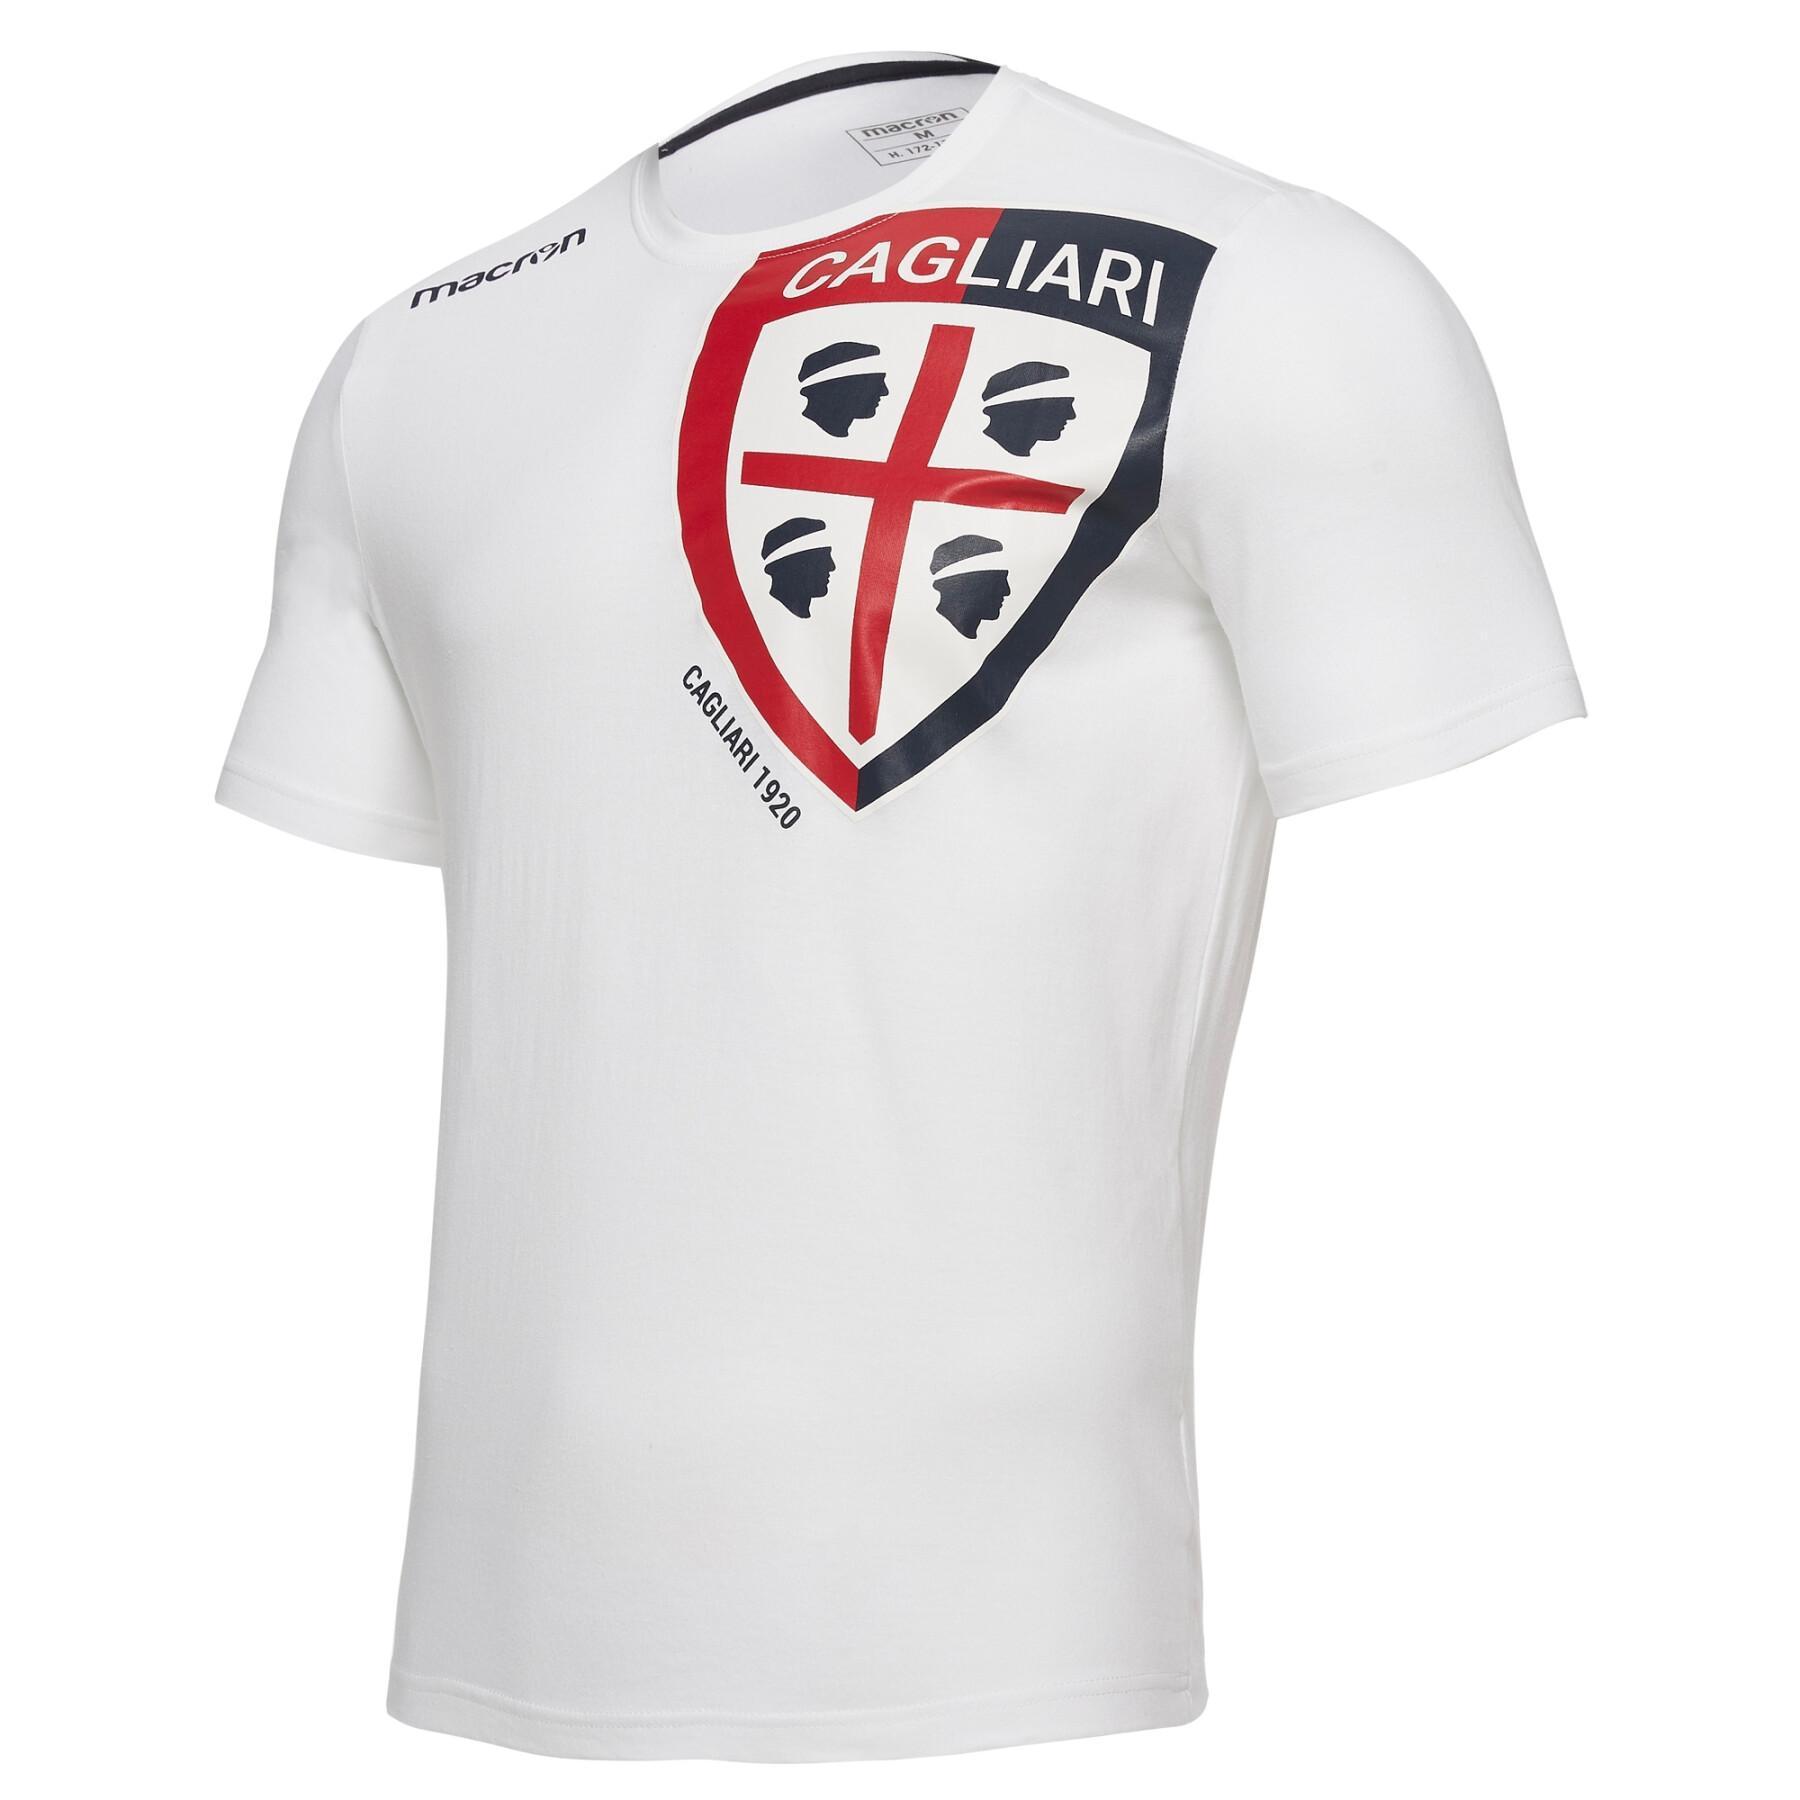 Camiseta Cagliari Calcio bh 1